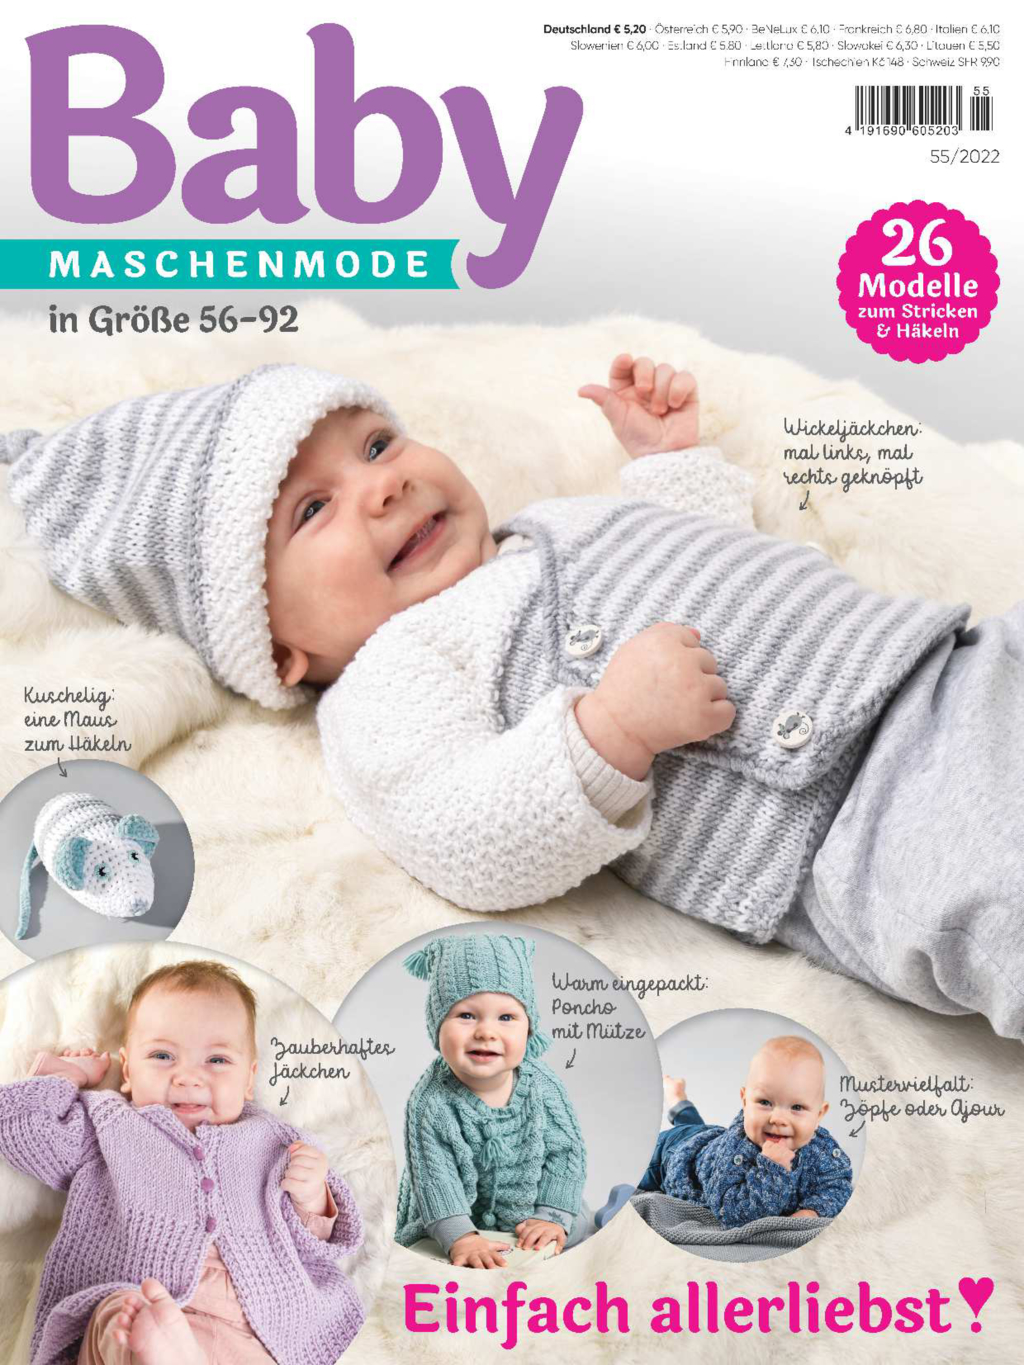 Baby maschenmode 55/2022 - Einfach allerliebst